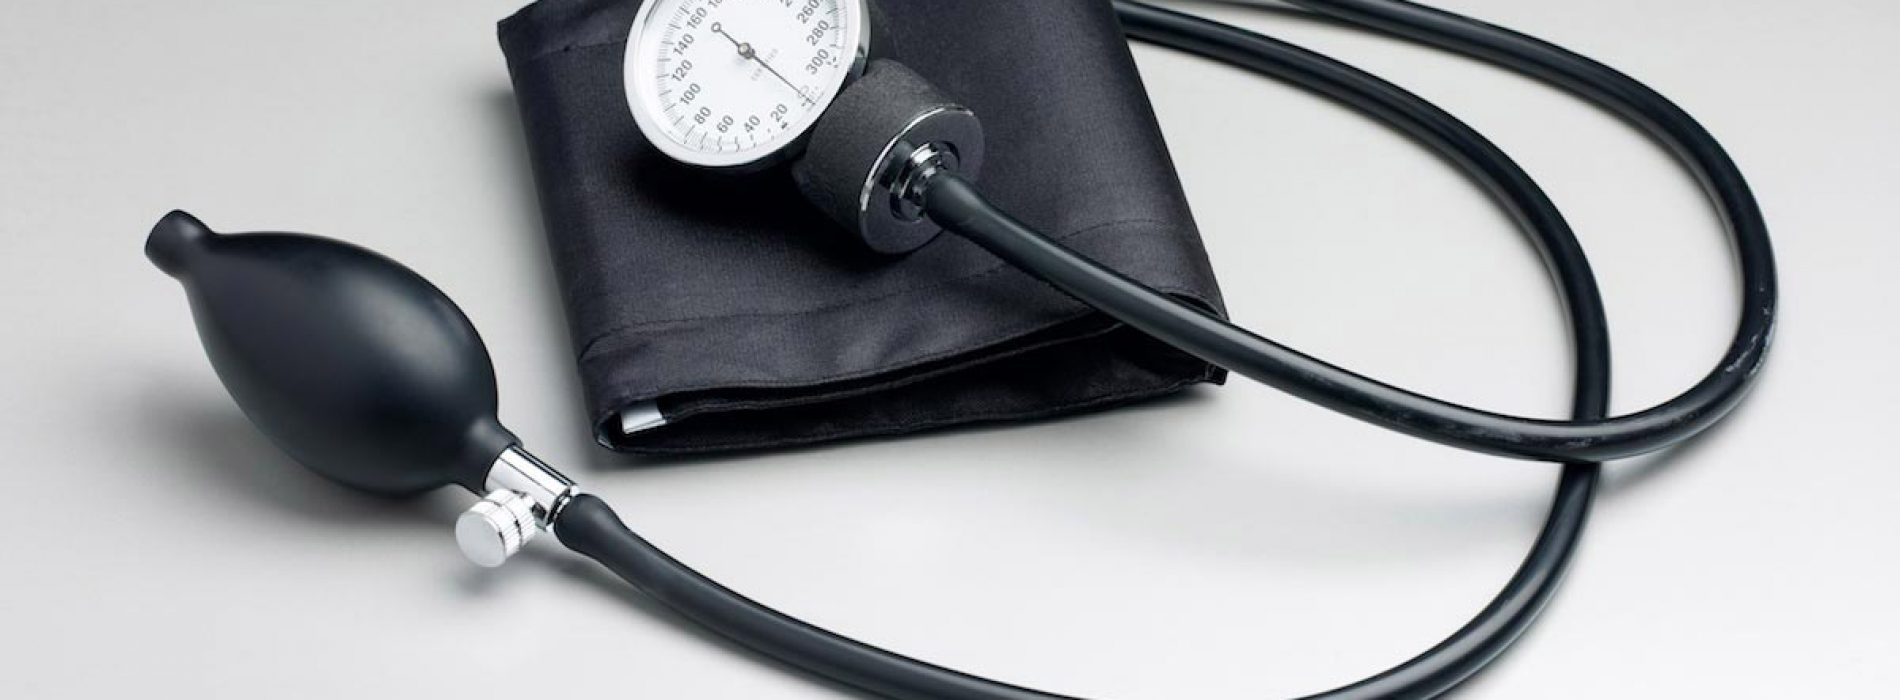 U kunt uw bloeddruk onder controle houden zonder medicijnen – dit is hoe